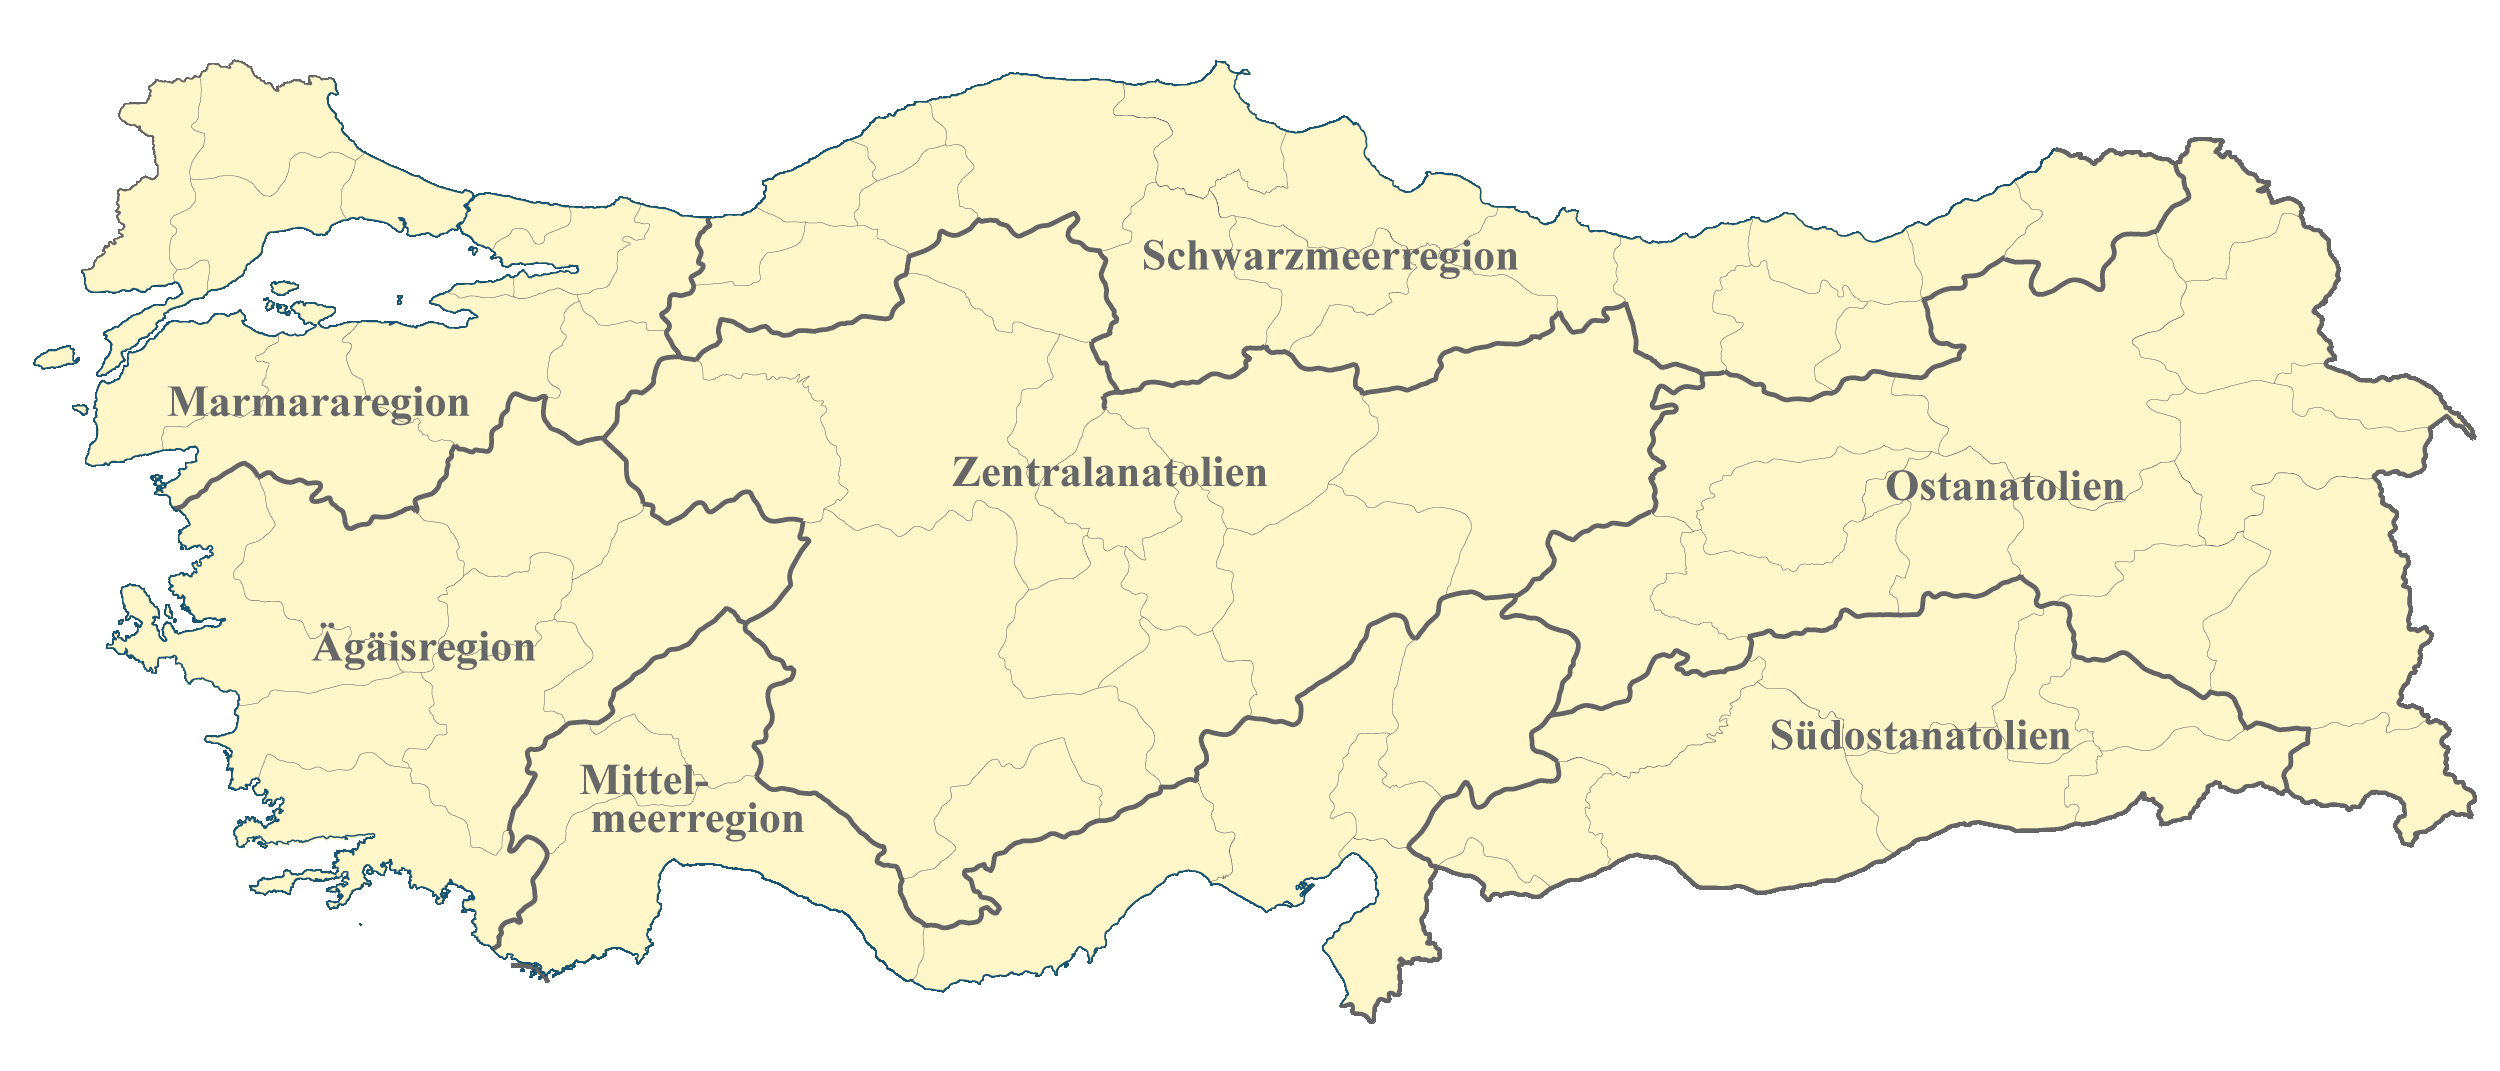 Türkei Karte nach Regionen gegliedert